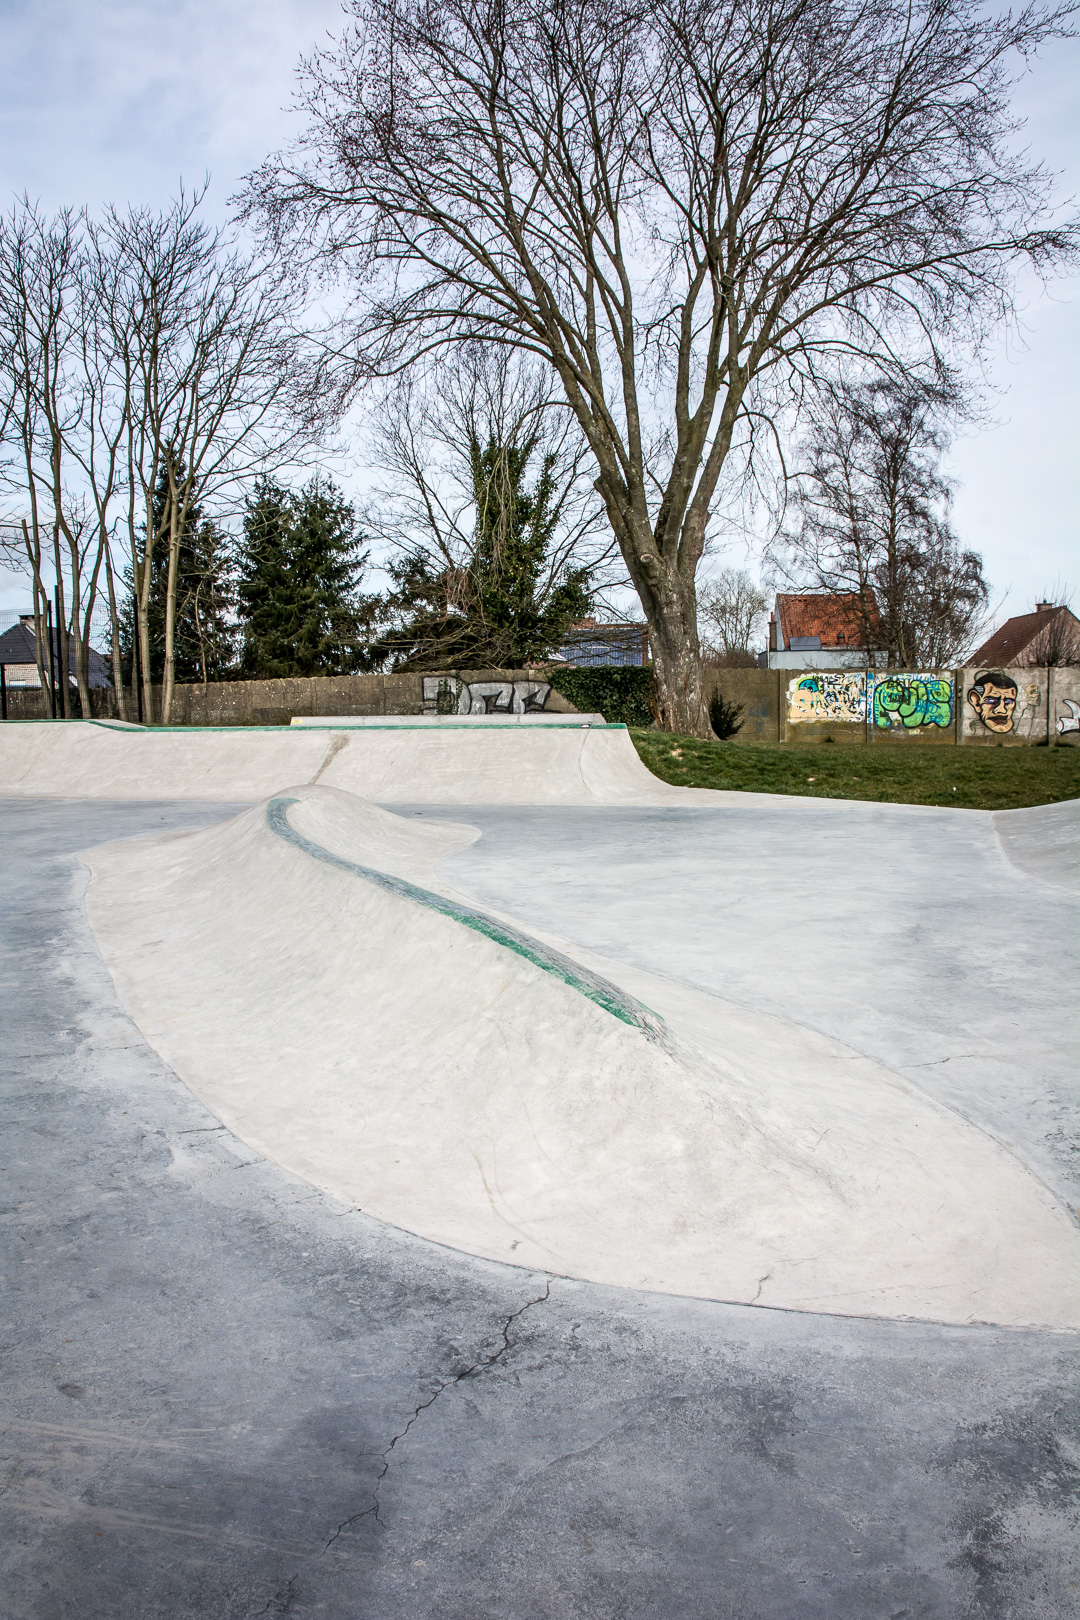 Schepdaal skatepark